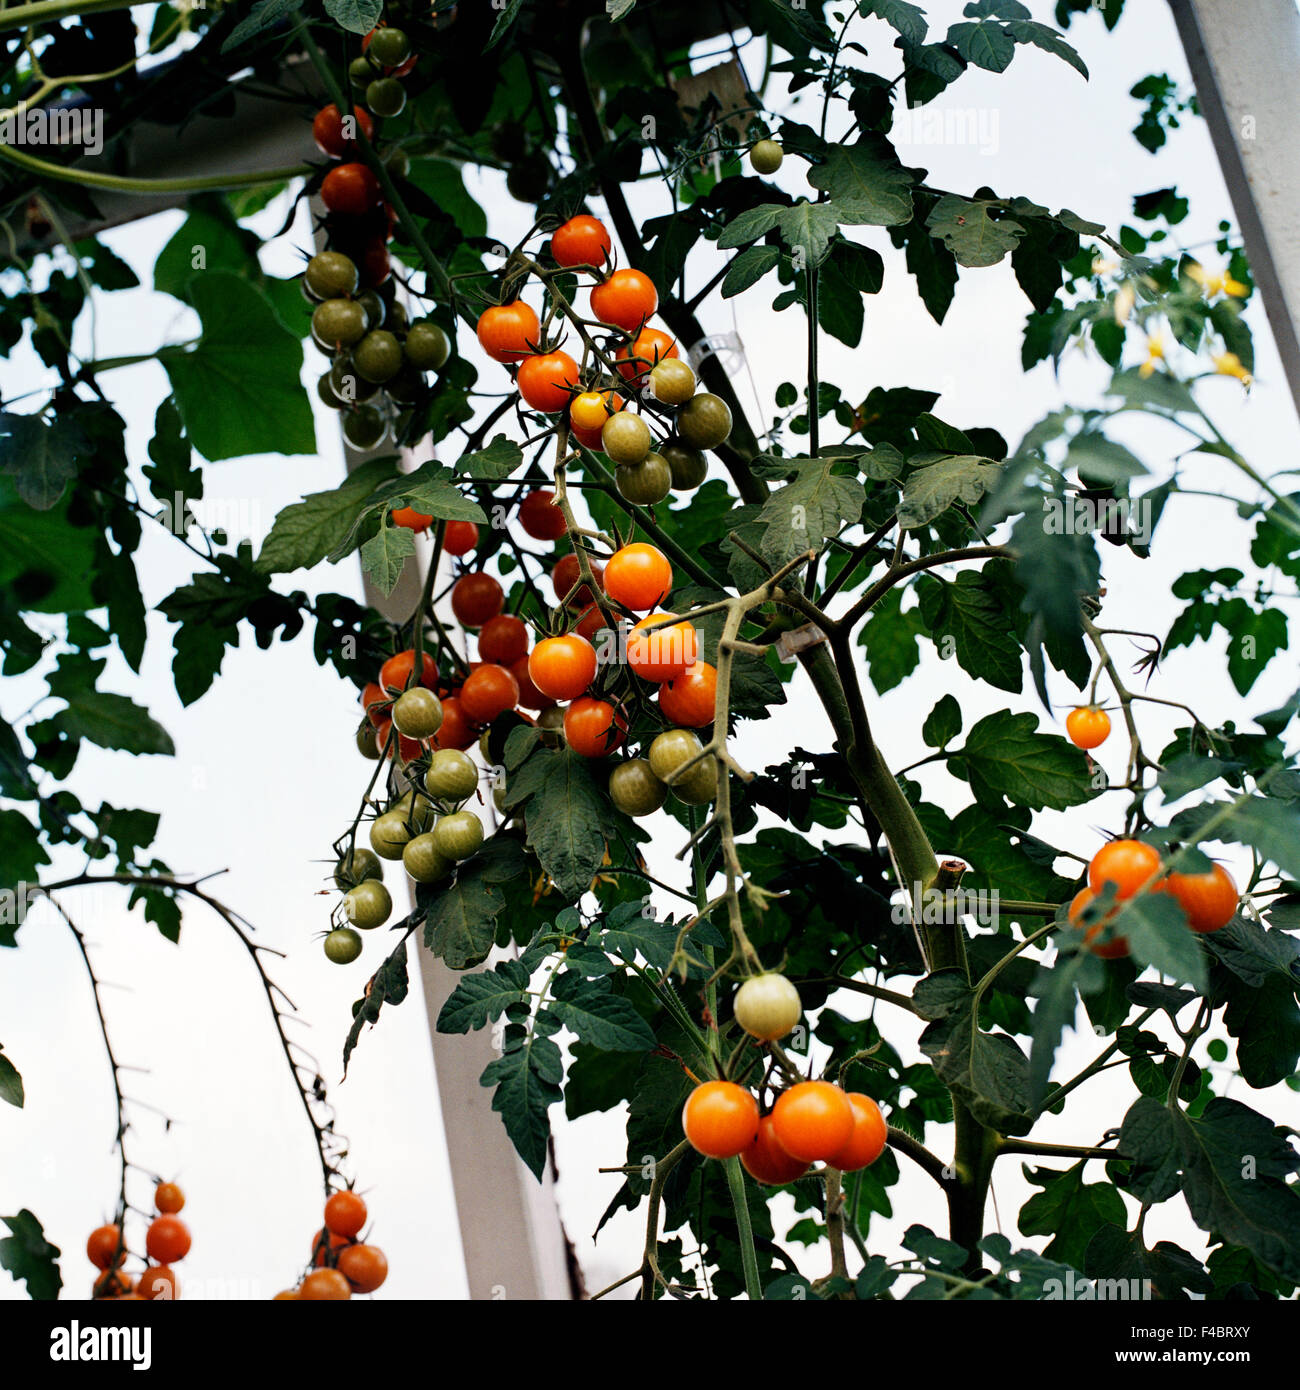 Farbe Bild Obst und Gemüse Blatt Pflanzen quadratische Tomaten Gemüse Stockfoto